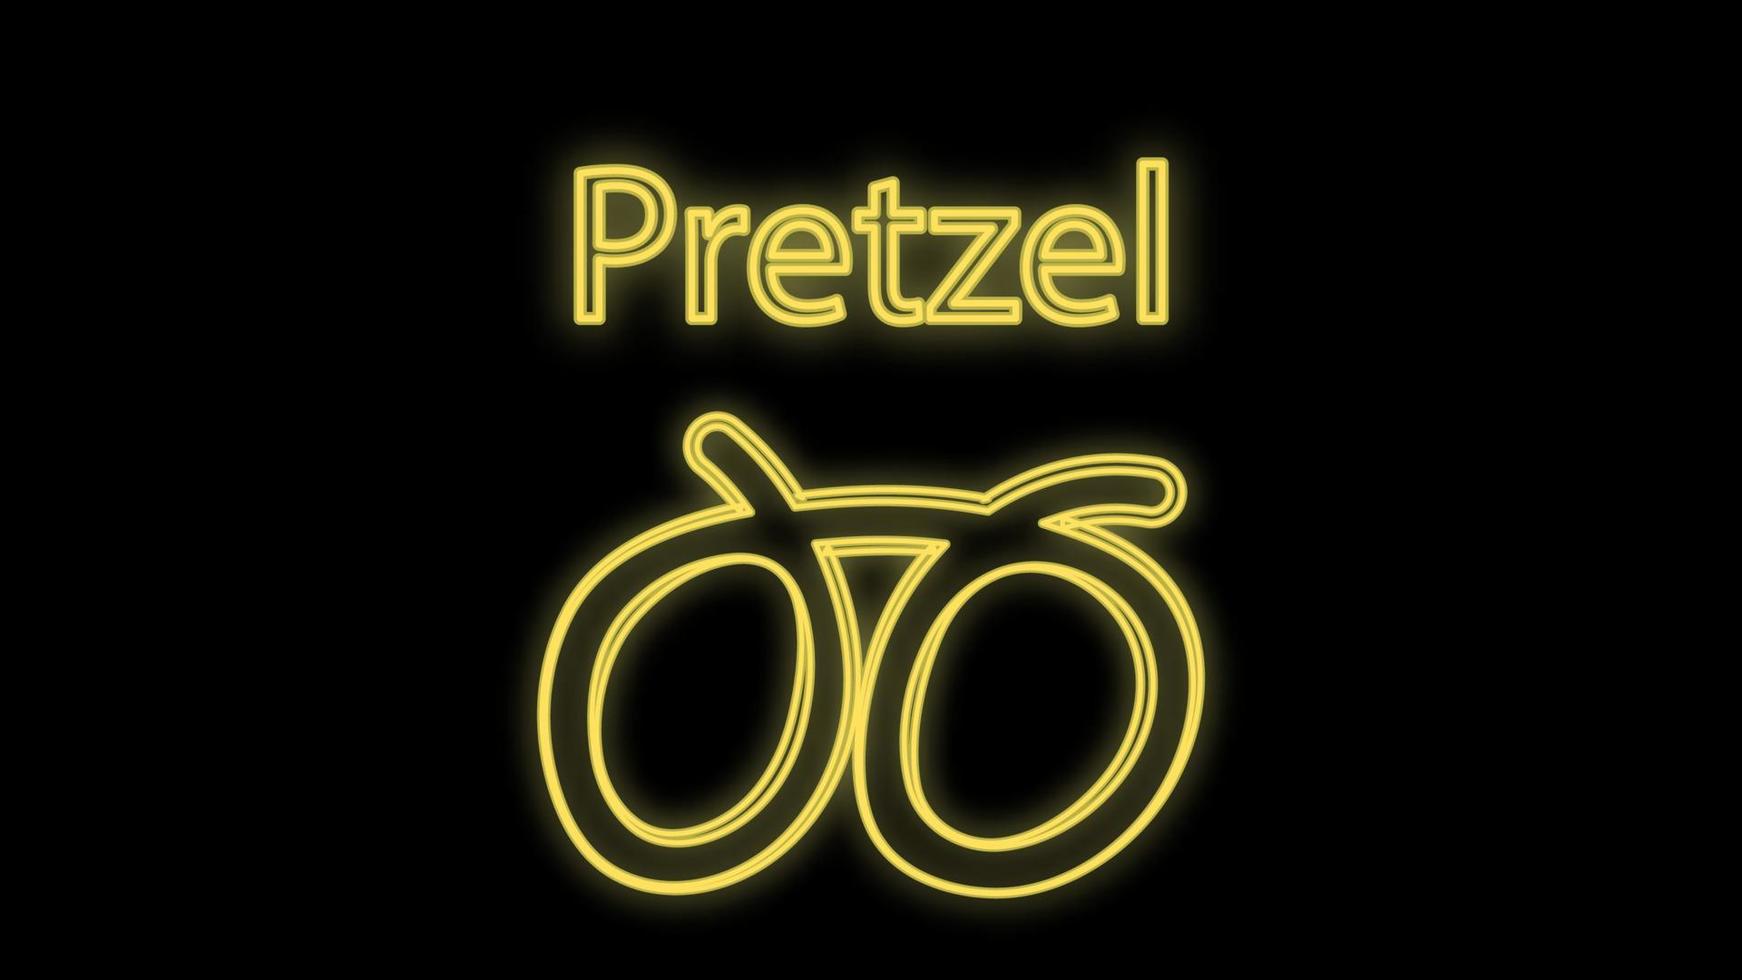 pretzel em fundo preto, ilustração vetorial. pretzel neon na cor amarela, sinal de néon brilhante com letras na parte superior. neon brilhante, decoração e navegação para café vetor